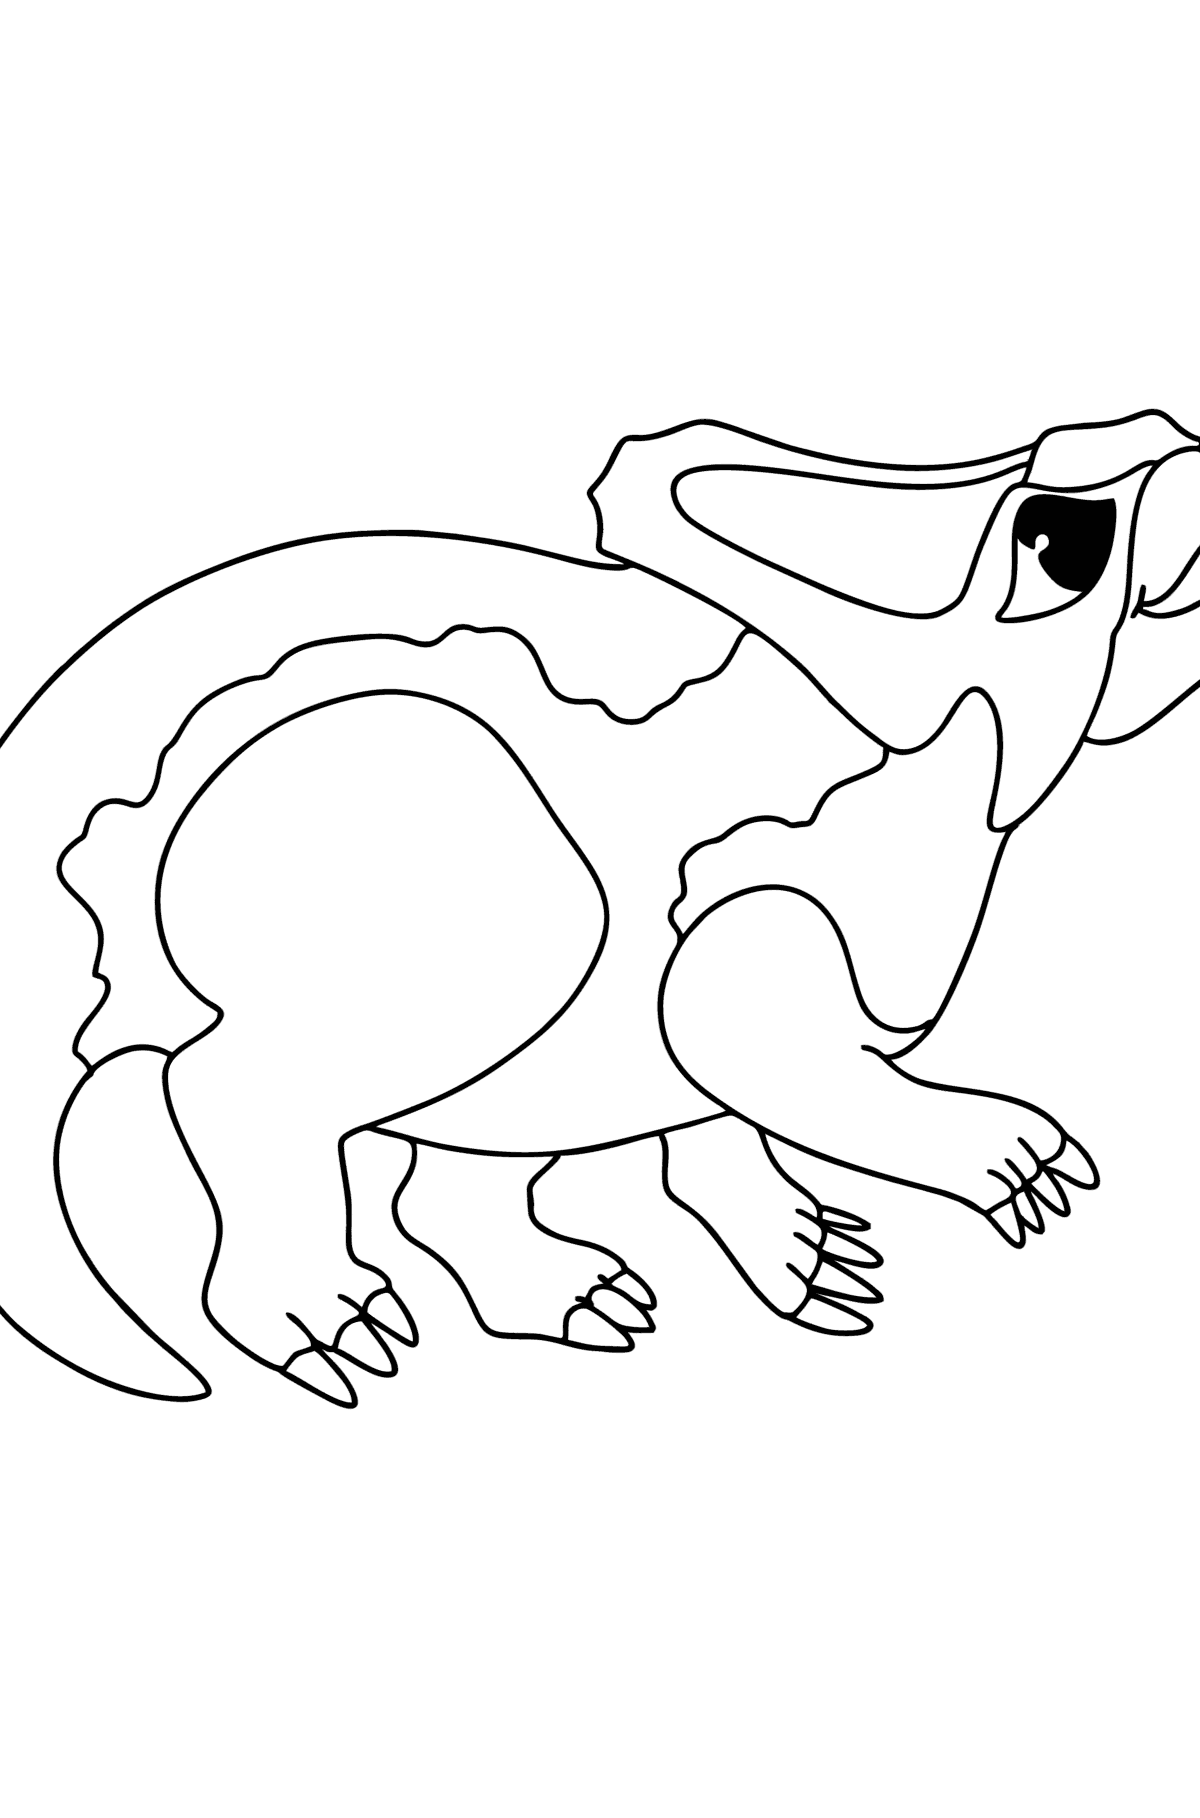 Desenho de Protoceratops para colorir - Imagens para Colorir para Crianças